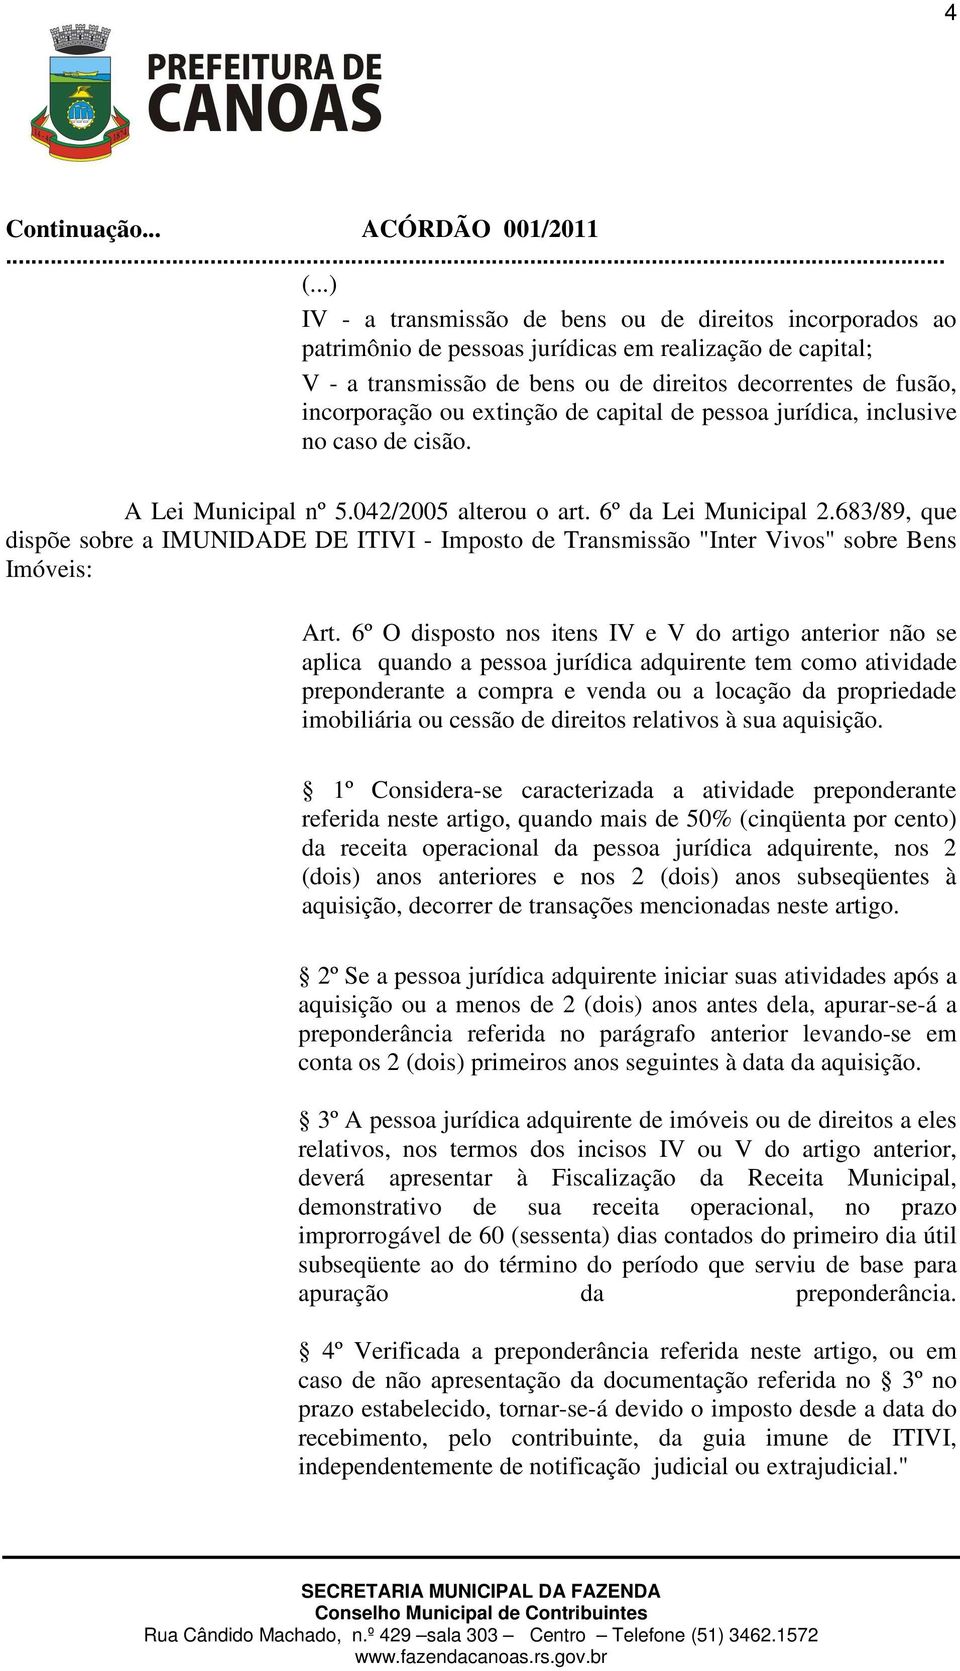 683/89, que dispõe sobre a IMUNIDADE DE ITIVI - Imposto de Transmissão "Inter Vivos" sobre Bens Imóveis: Art.